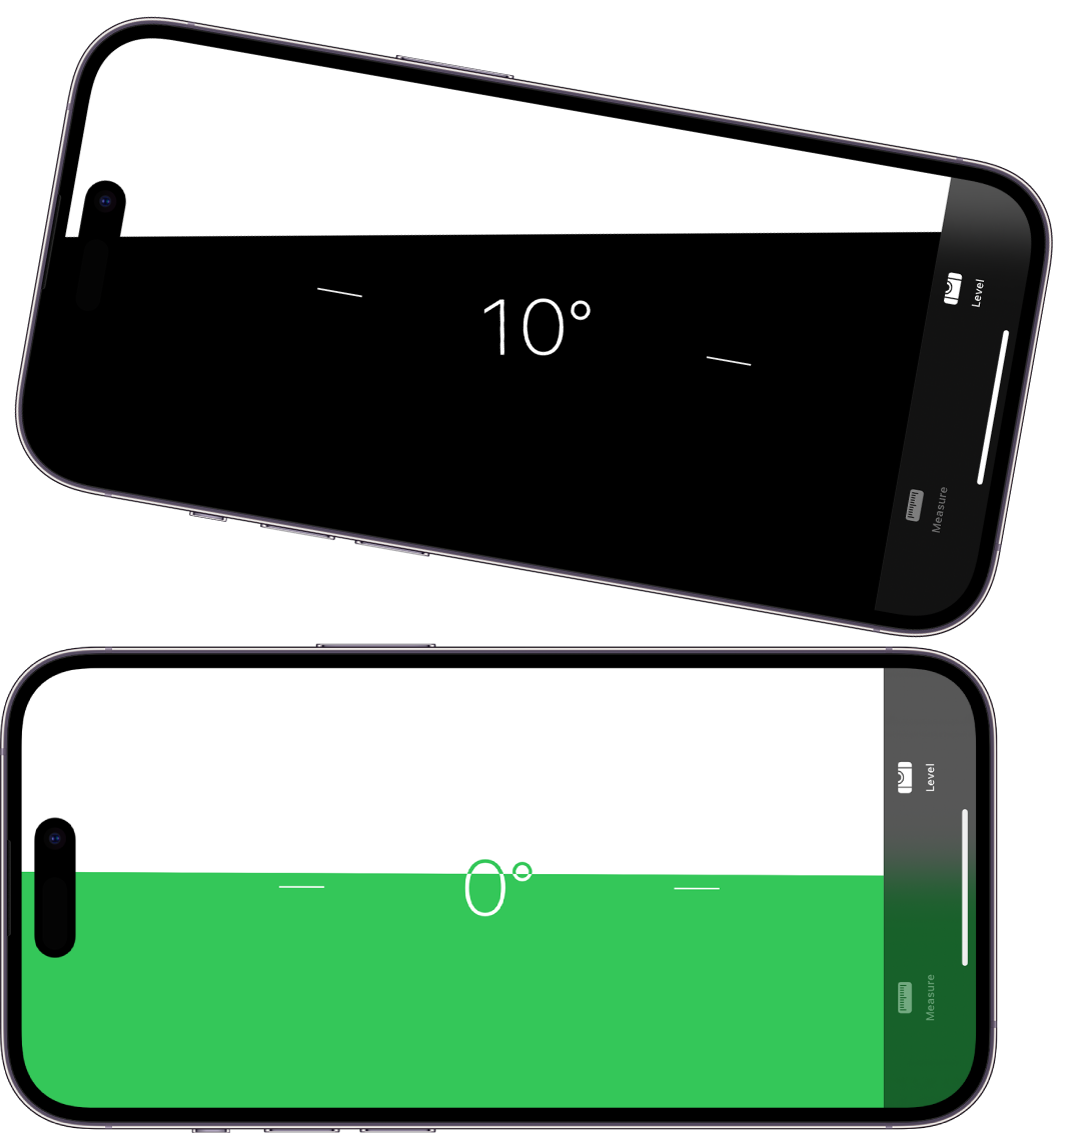 Zaslon ravni v aplikaciji Measure. Na zgornji strani je iPhone nagnjen pod kotom 10 stopinj, na desni strani pa je poravnan.